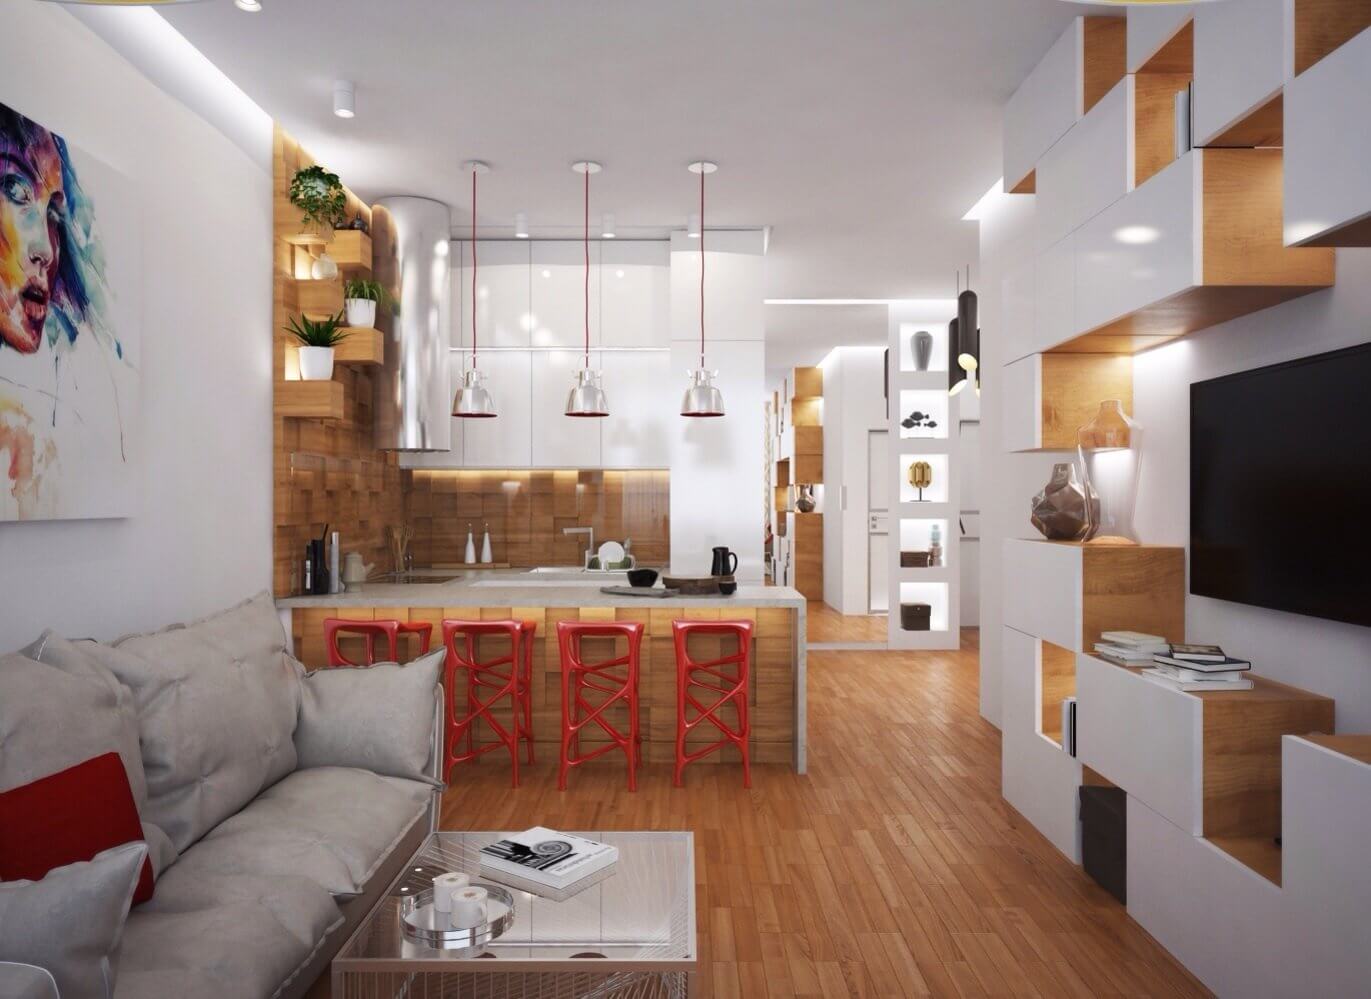 Дизайн проект квартиры двушки распашонки схема 60 кв м – распашонка и друге виды расположения комнат в 2-х комнатной квартире в панельном доме, типы планировки в «новостройках»